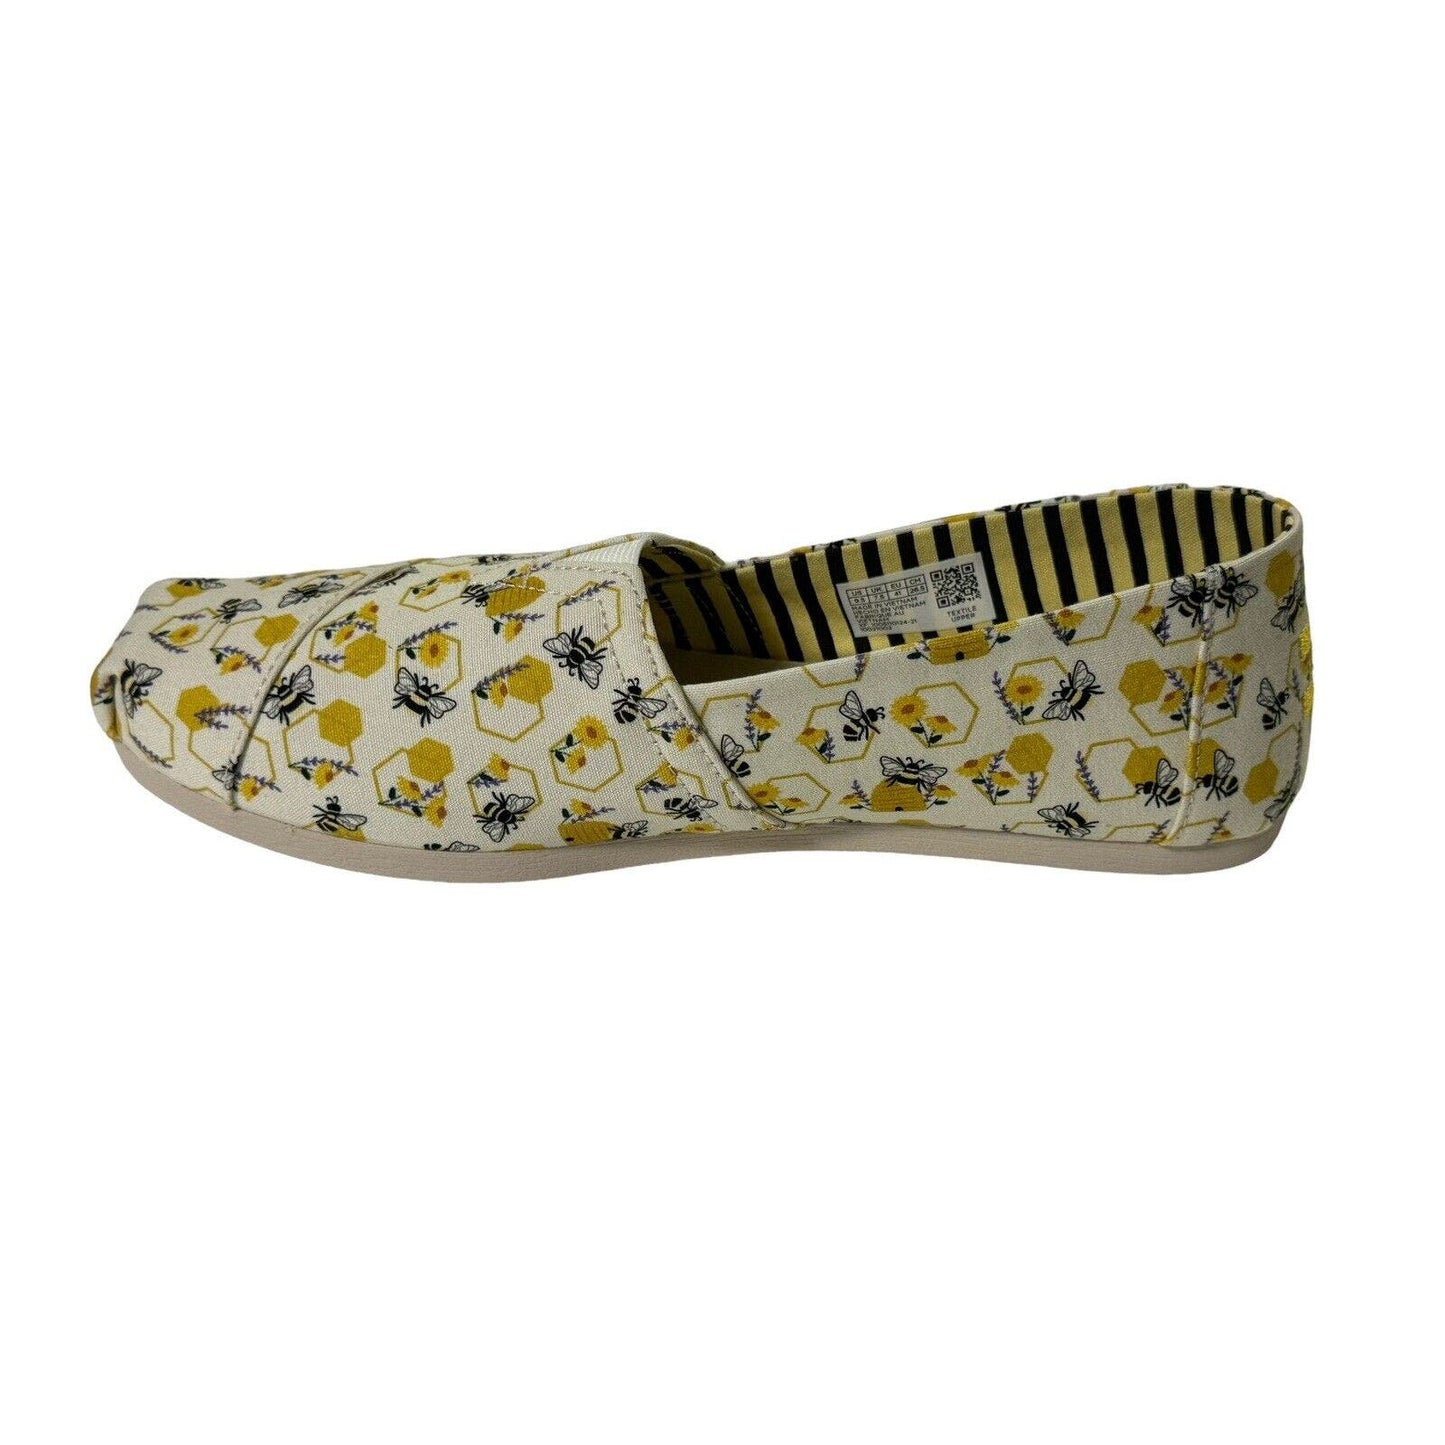 Toms Womans Alpargata Bees Floral Print Slip On Shoes Size 9